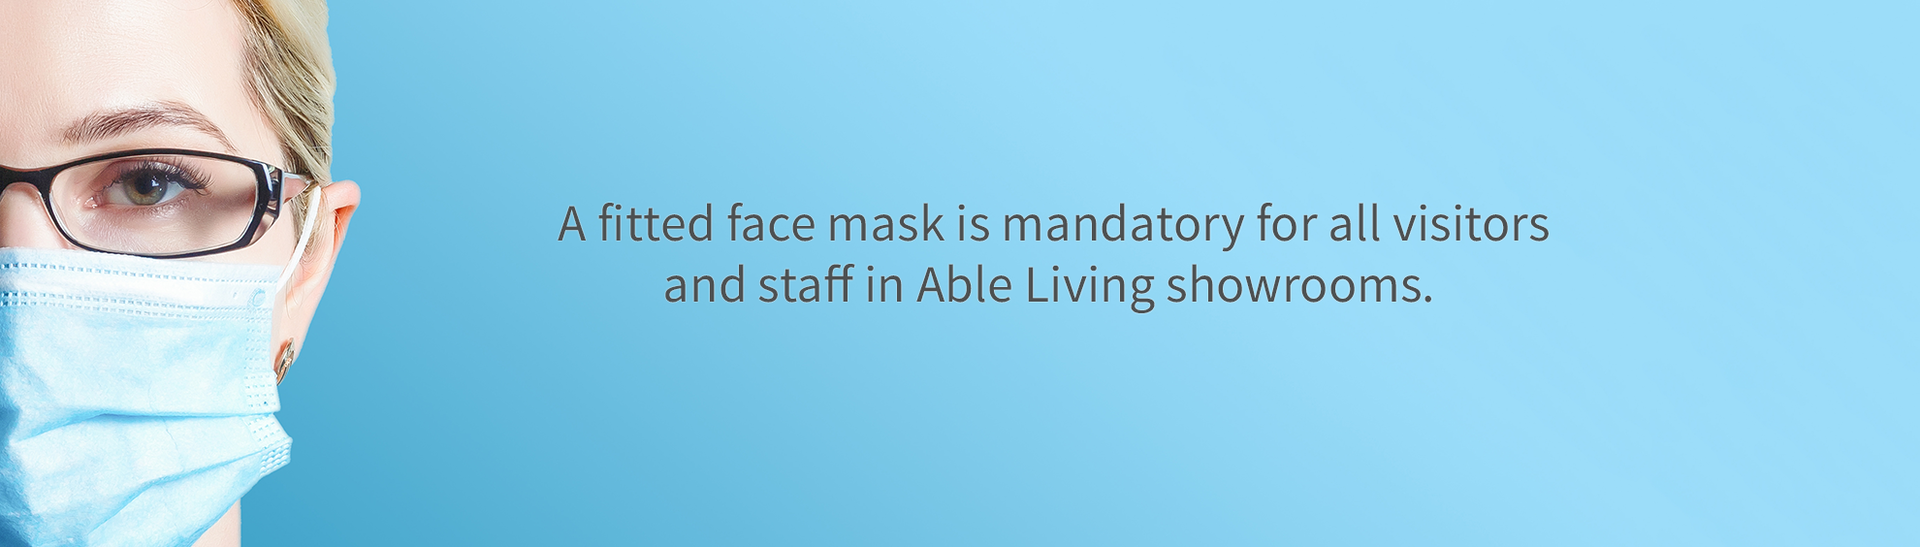 Face mask banner